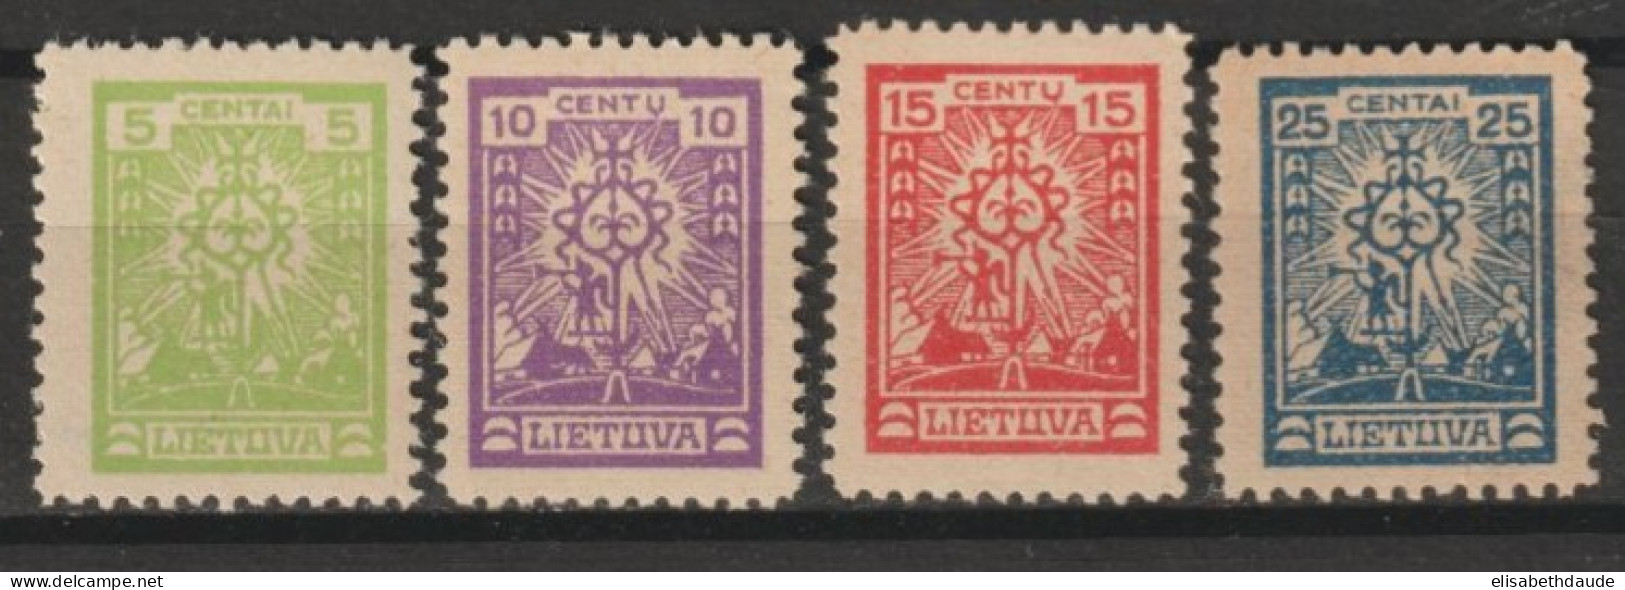 1923 - LITUANIE - SERIE COMPLETE  N°185/187 * MLH SANS FILIGRANE - COTE = 30 EUR. - Litauen